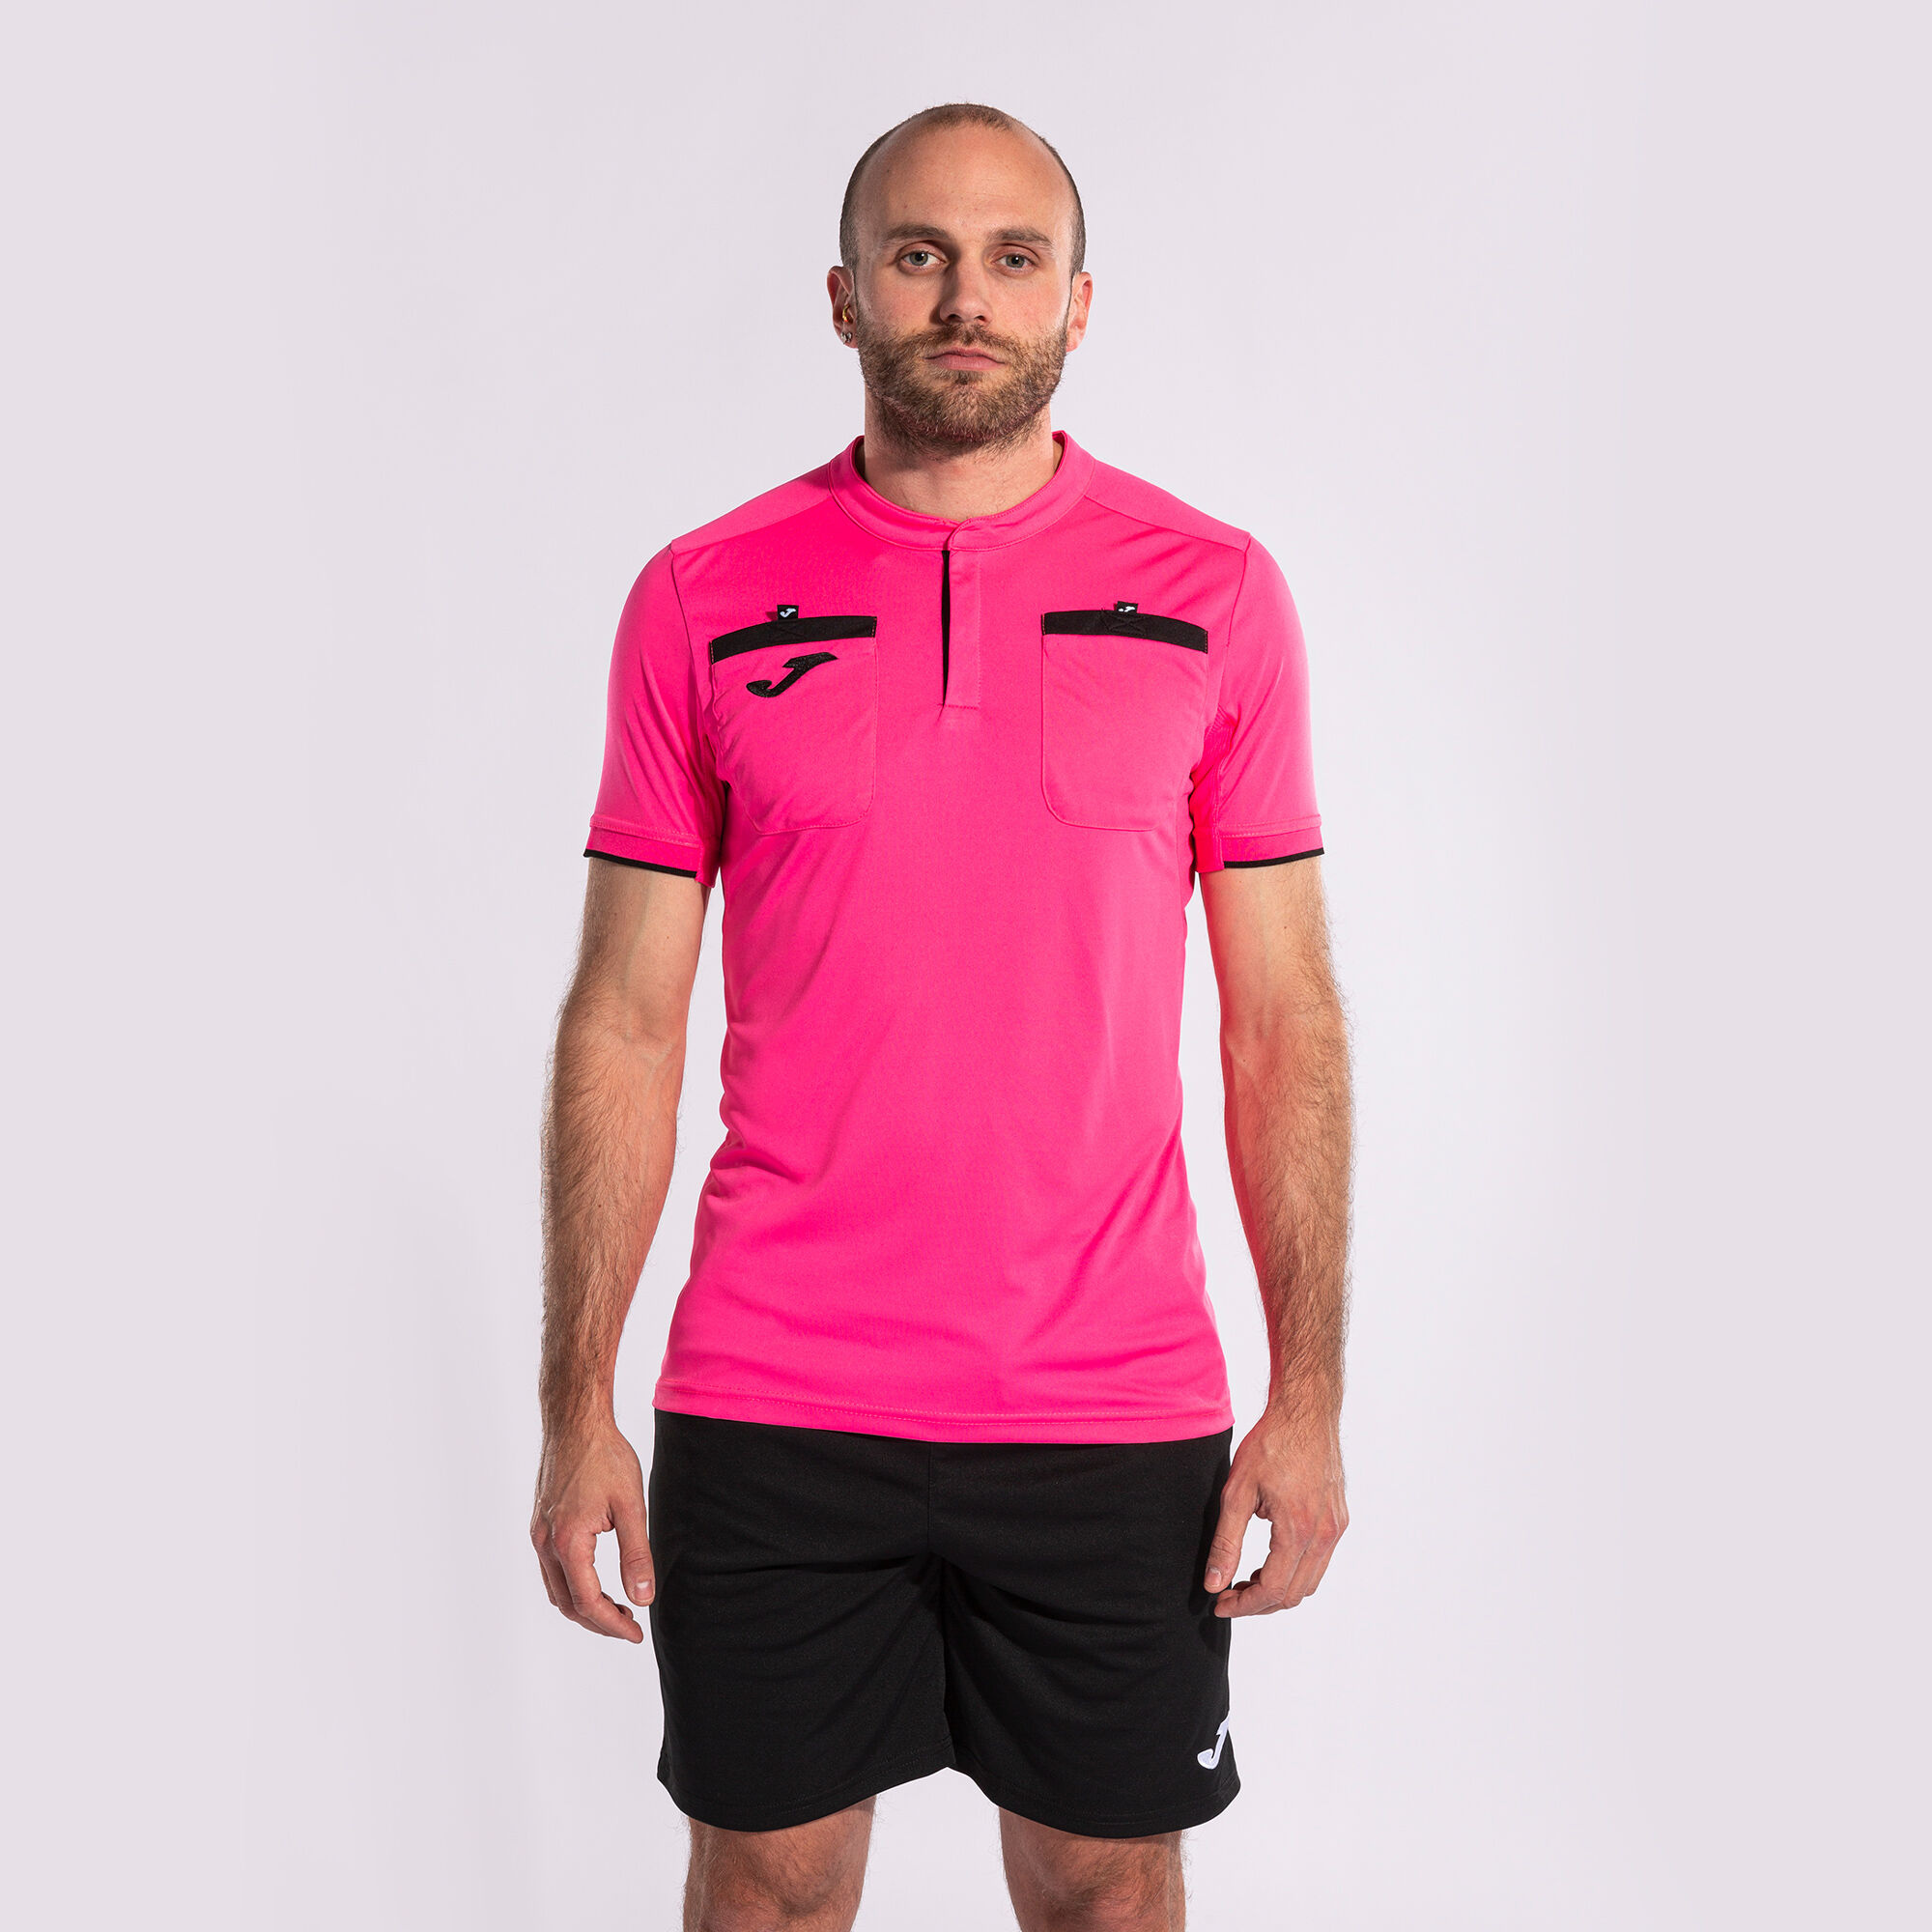 Camiseta manga corta hombre Referee rosa flúor